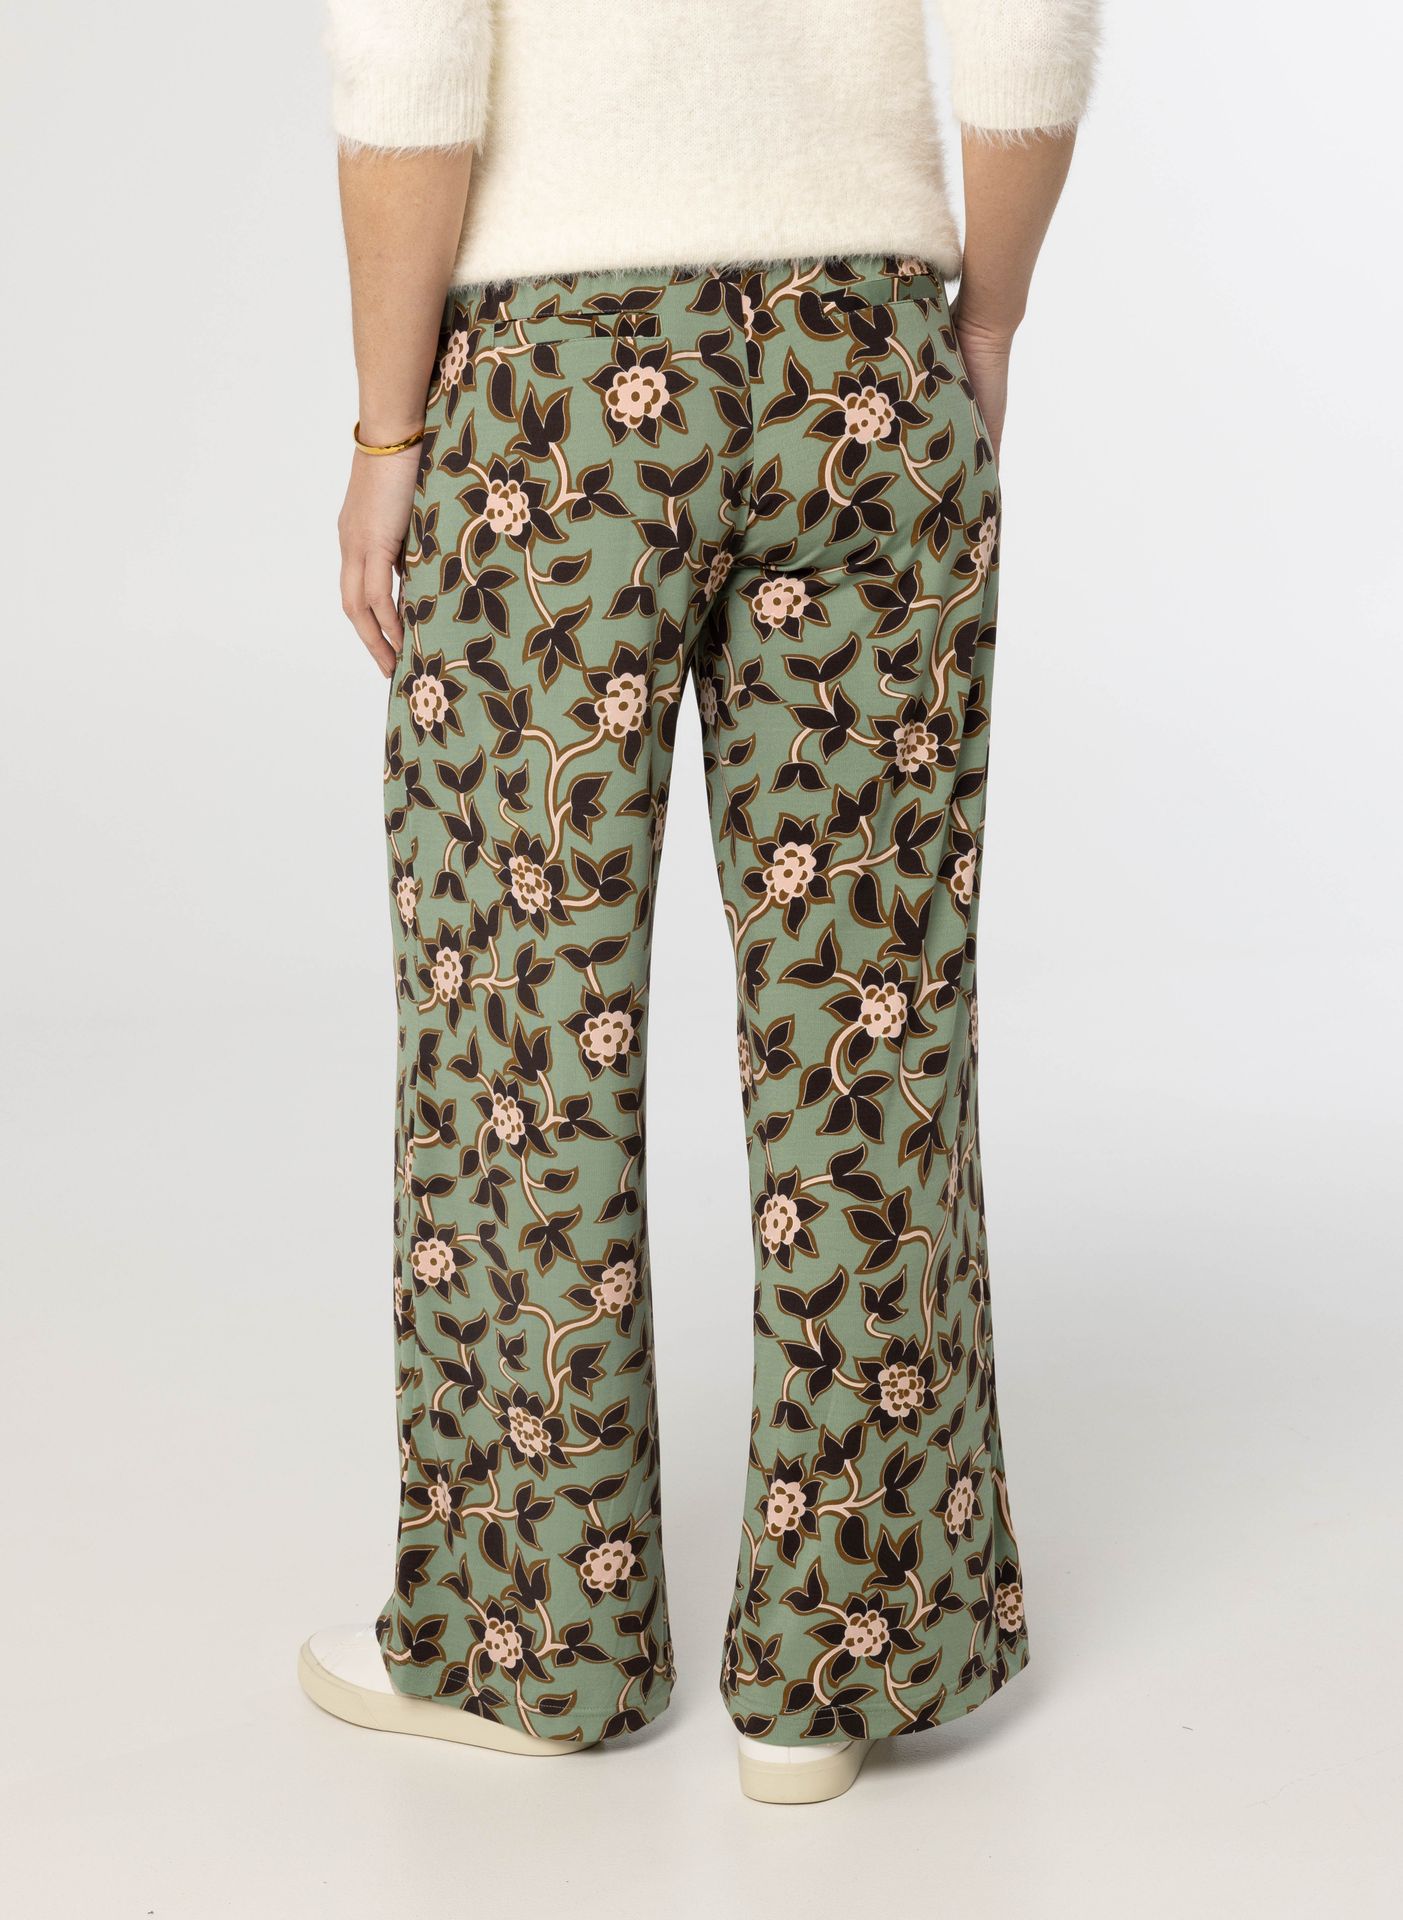 Norah Groene broek met botanische print green multicolor 213880-520